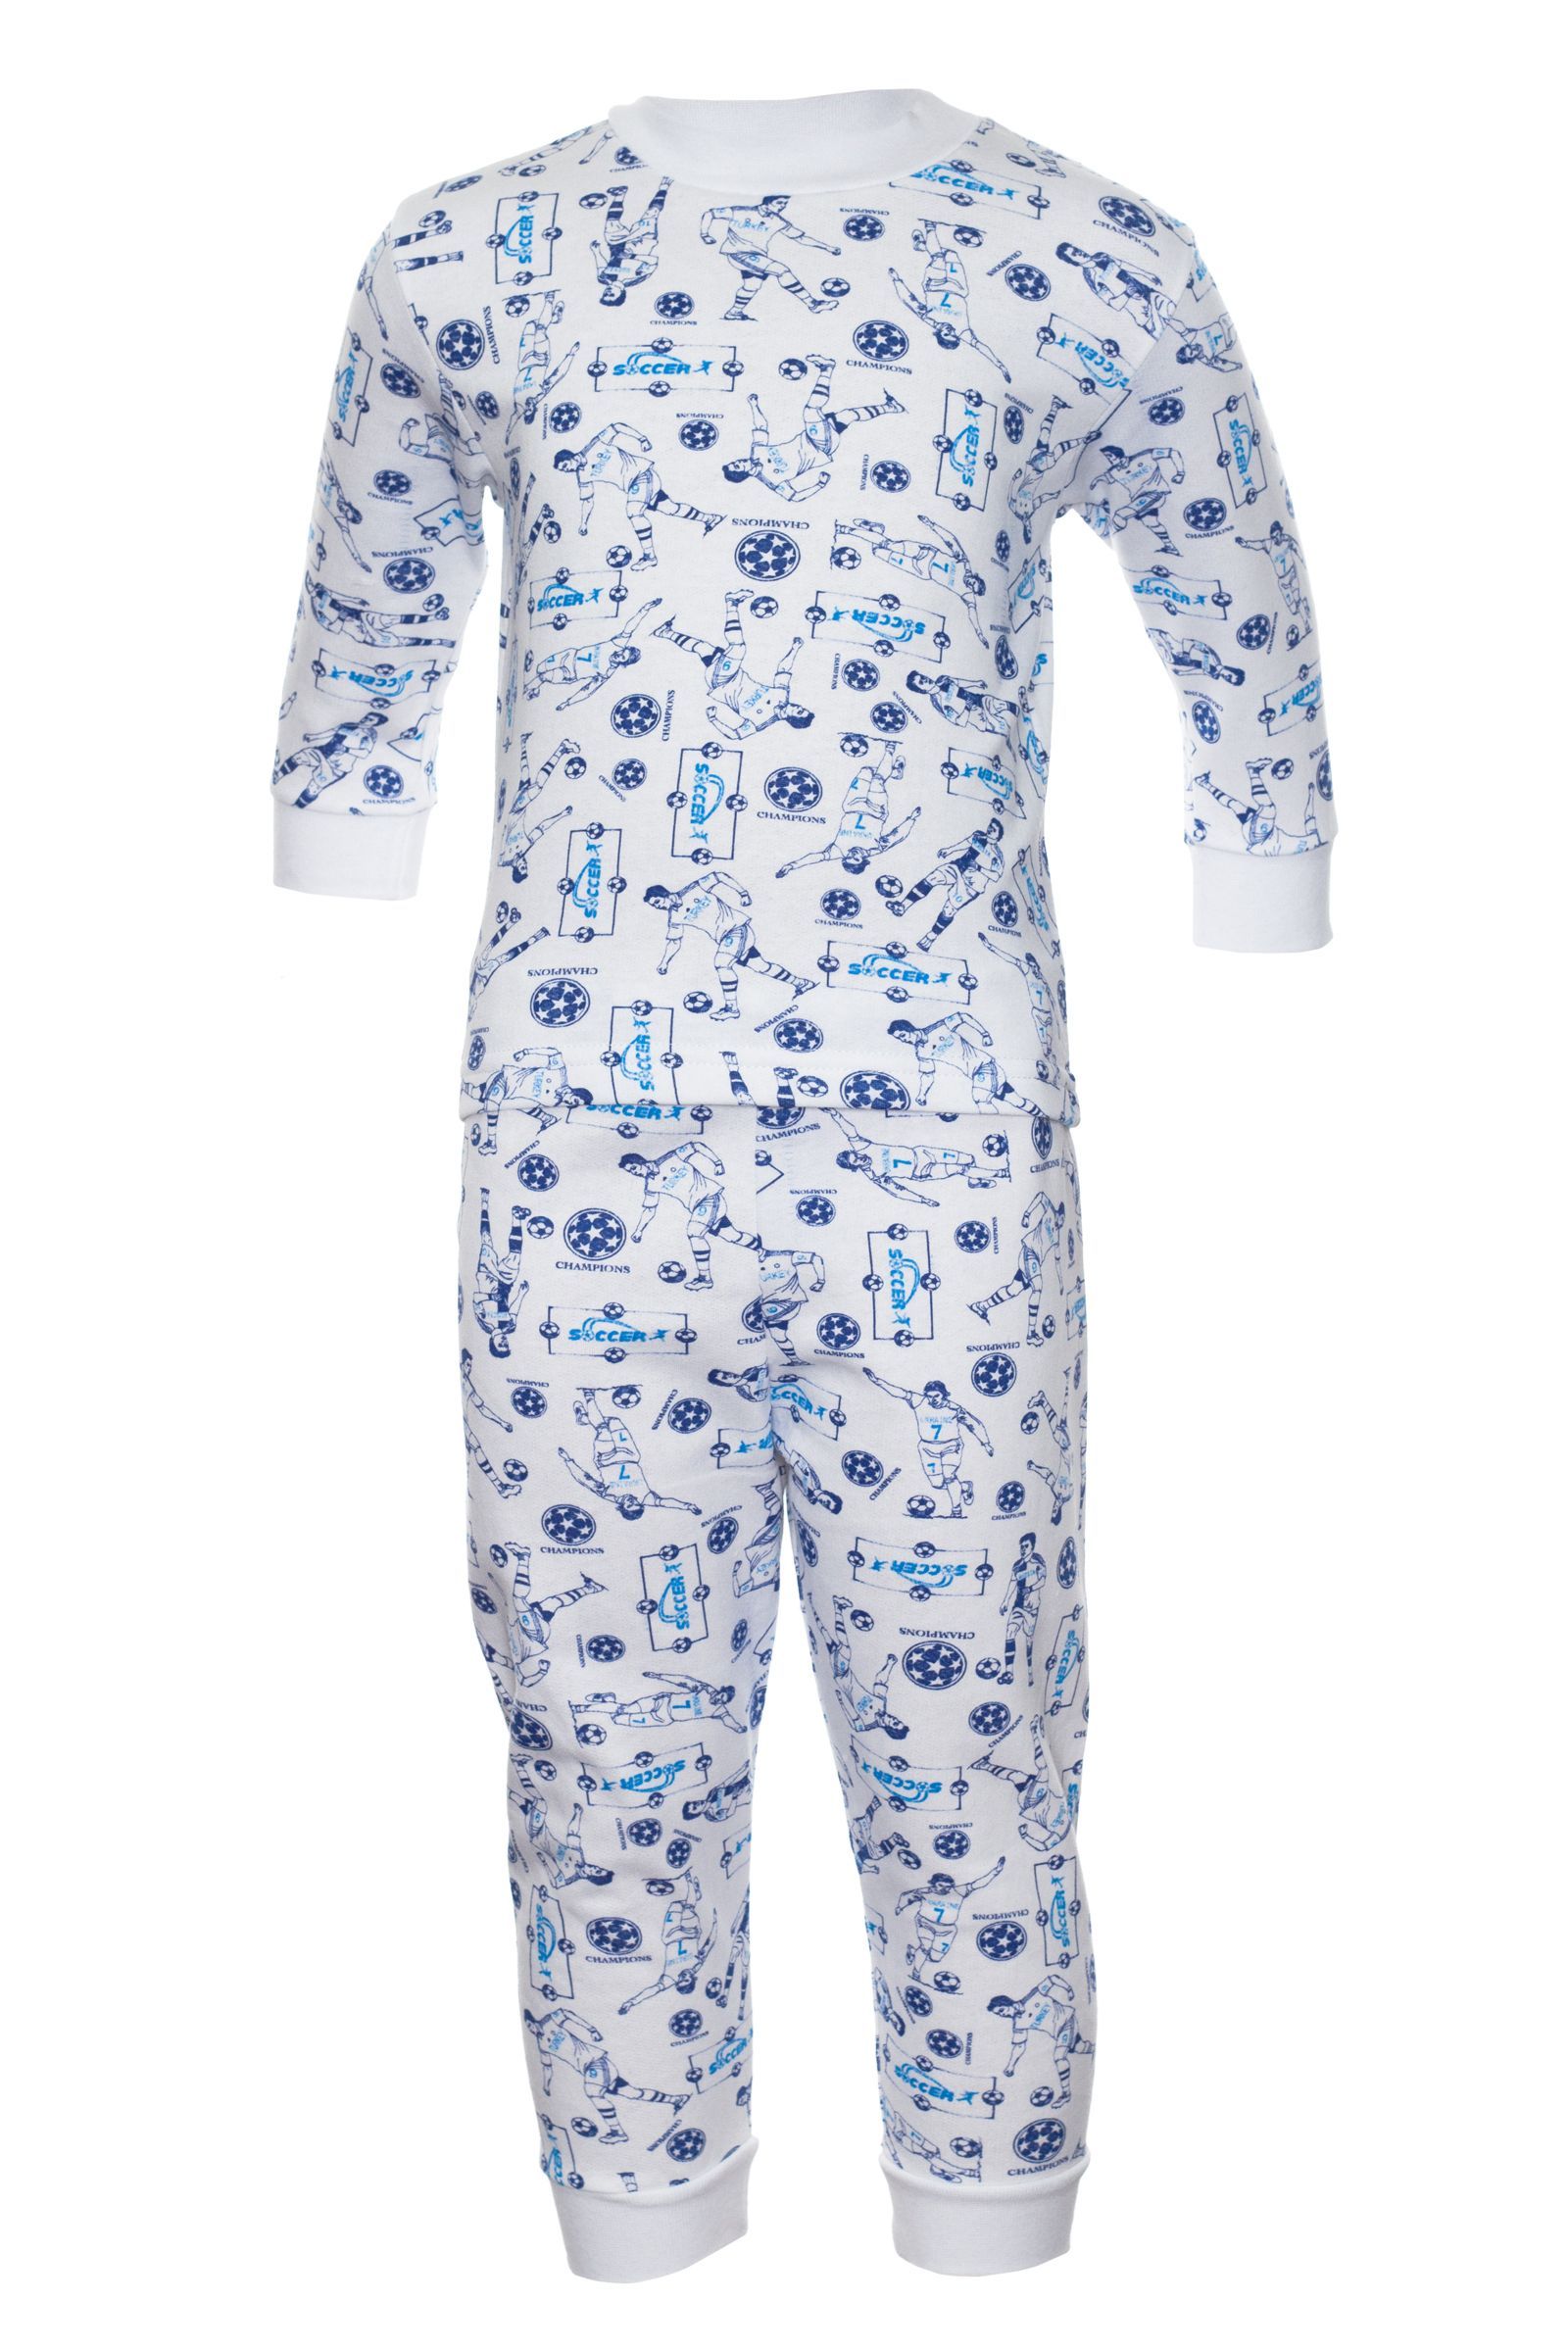 Пижама-ПЖ06-429 оптом от производителя детской одежды 'Алёна'